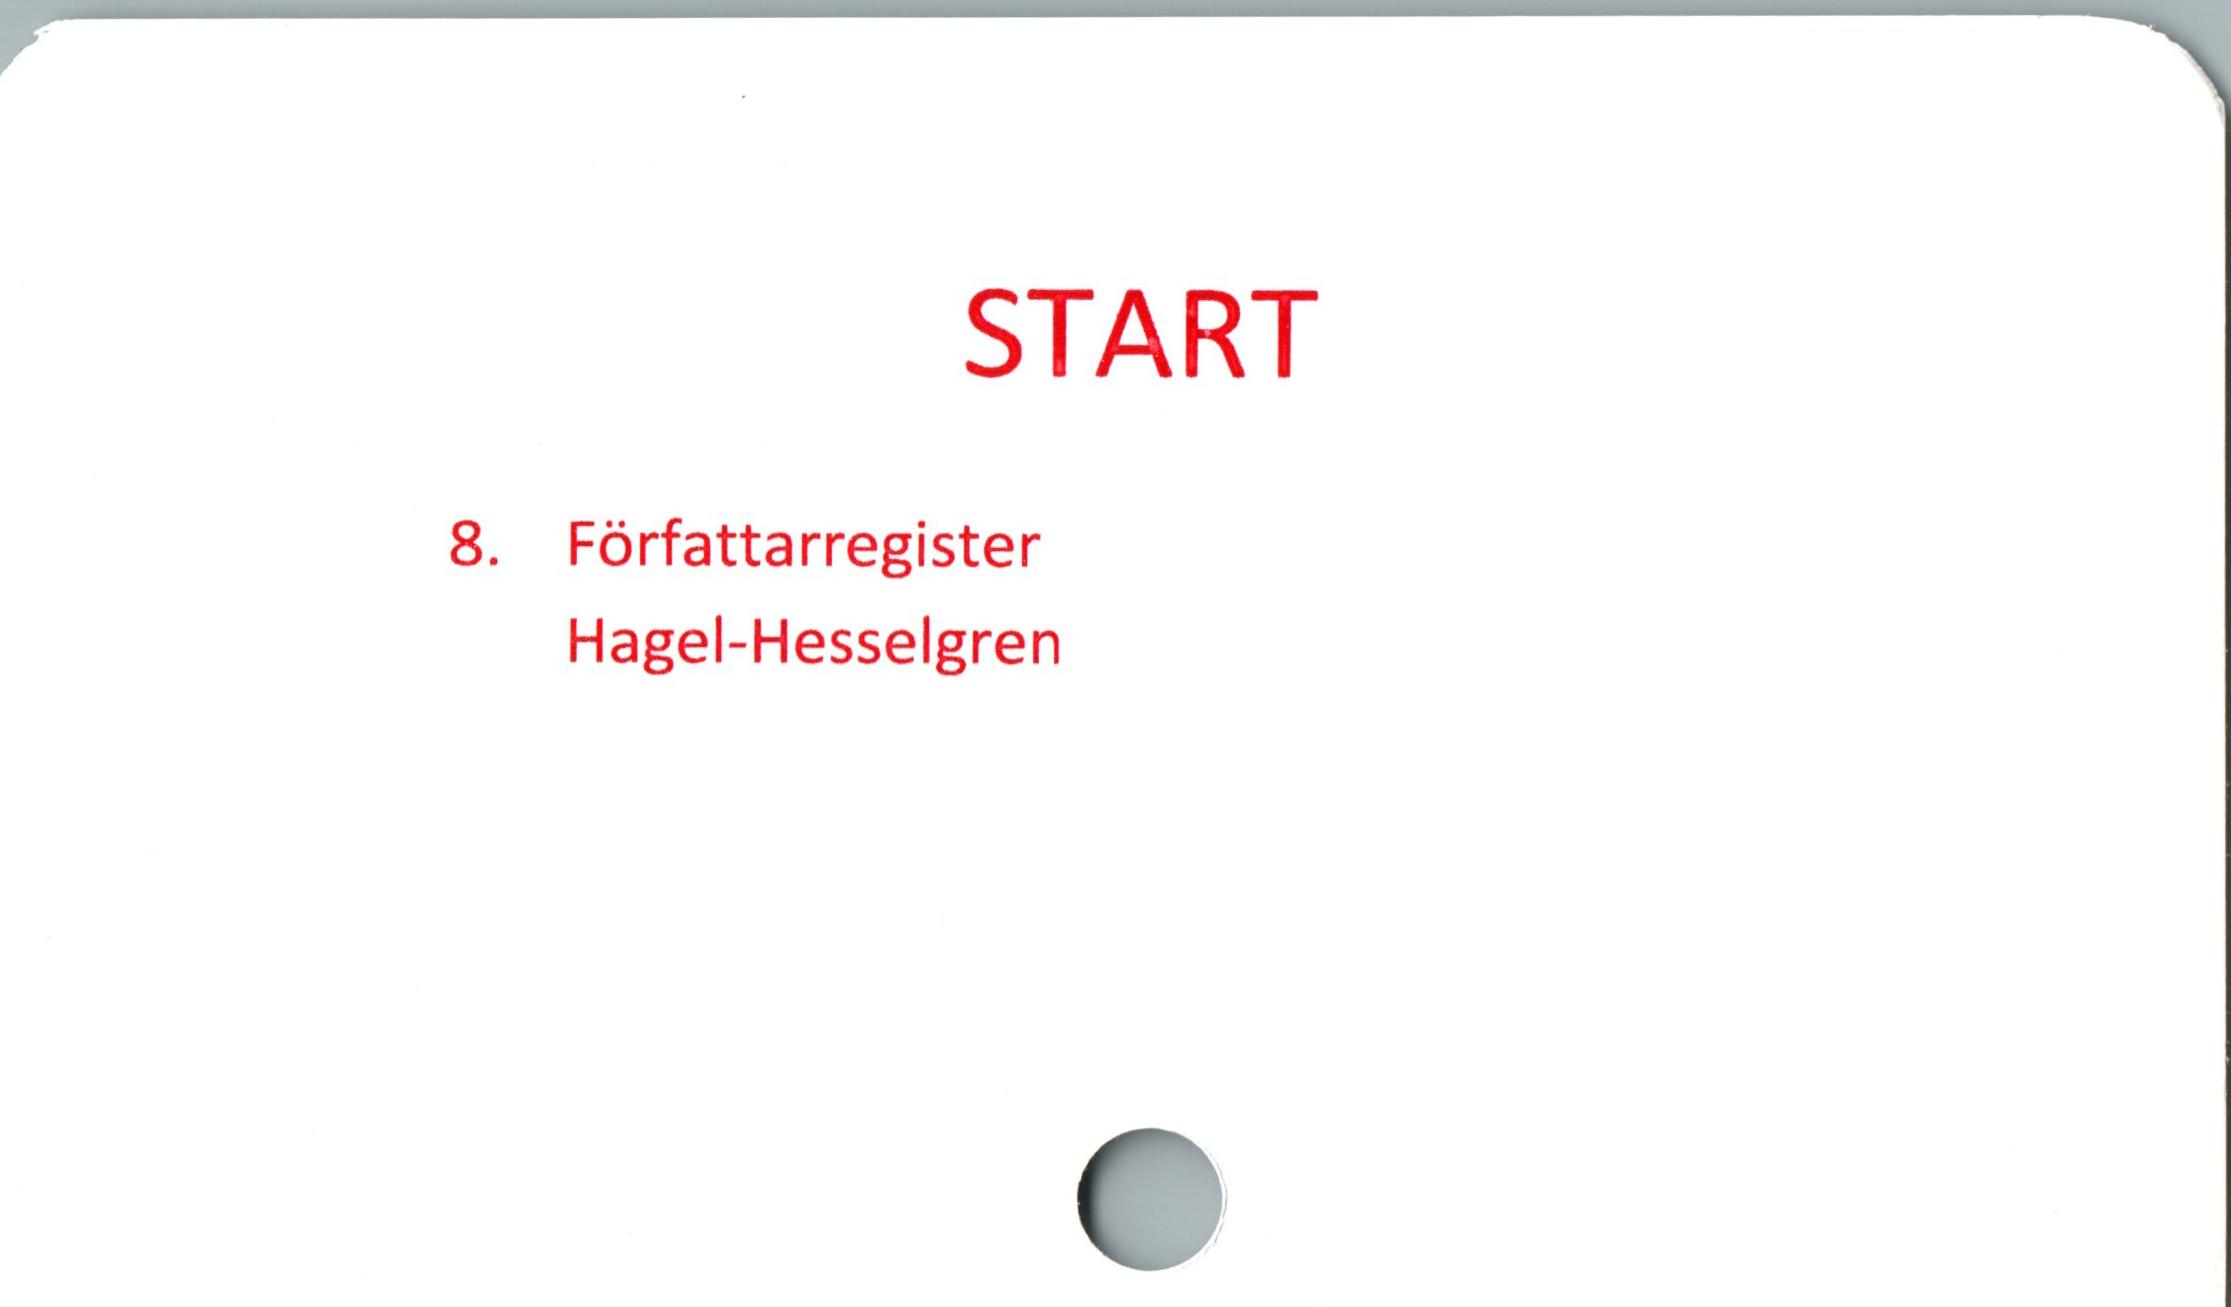  ﻿START

8. Författa rregister
Hagel-Hesselgren